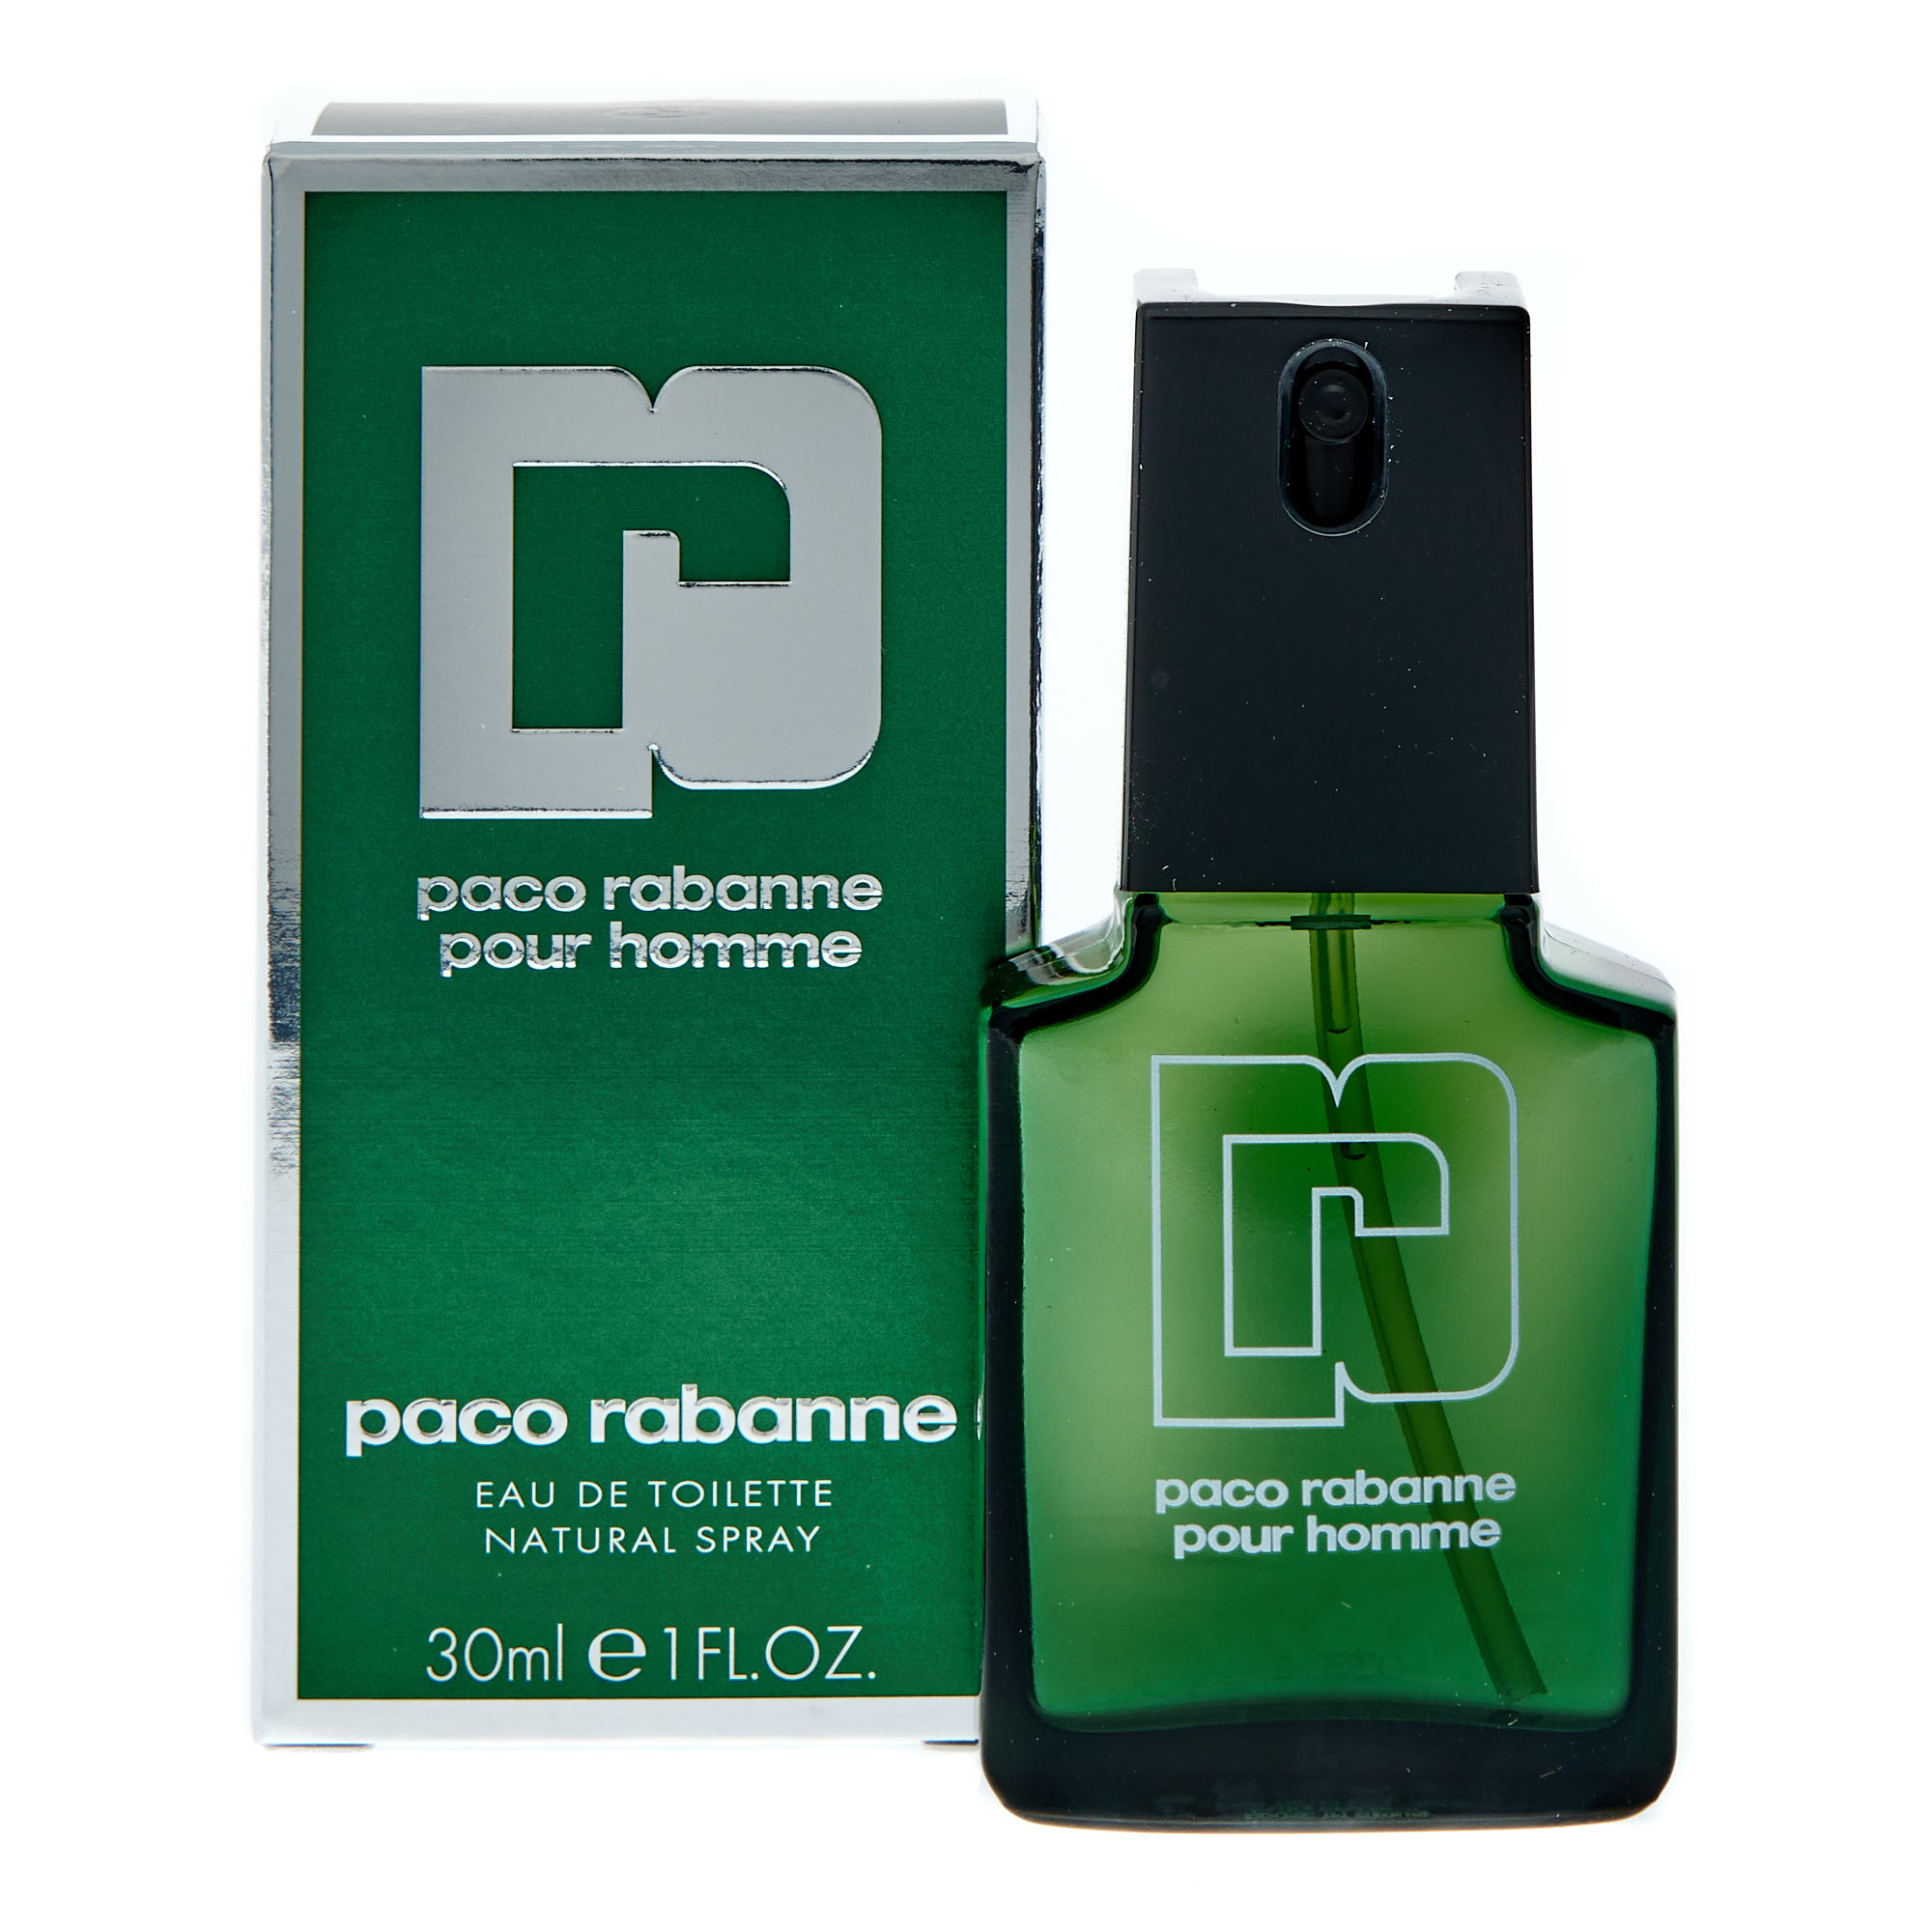 Paco Rabanne pour homme EDT. Paco Rabanne Eau de Toilette мужские. Paco Rabanne зеленый флакон. Paco Rabanne fabulous 30 ml. Rabanne pour homme